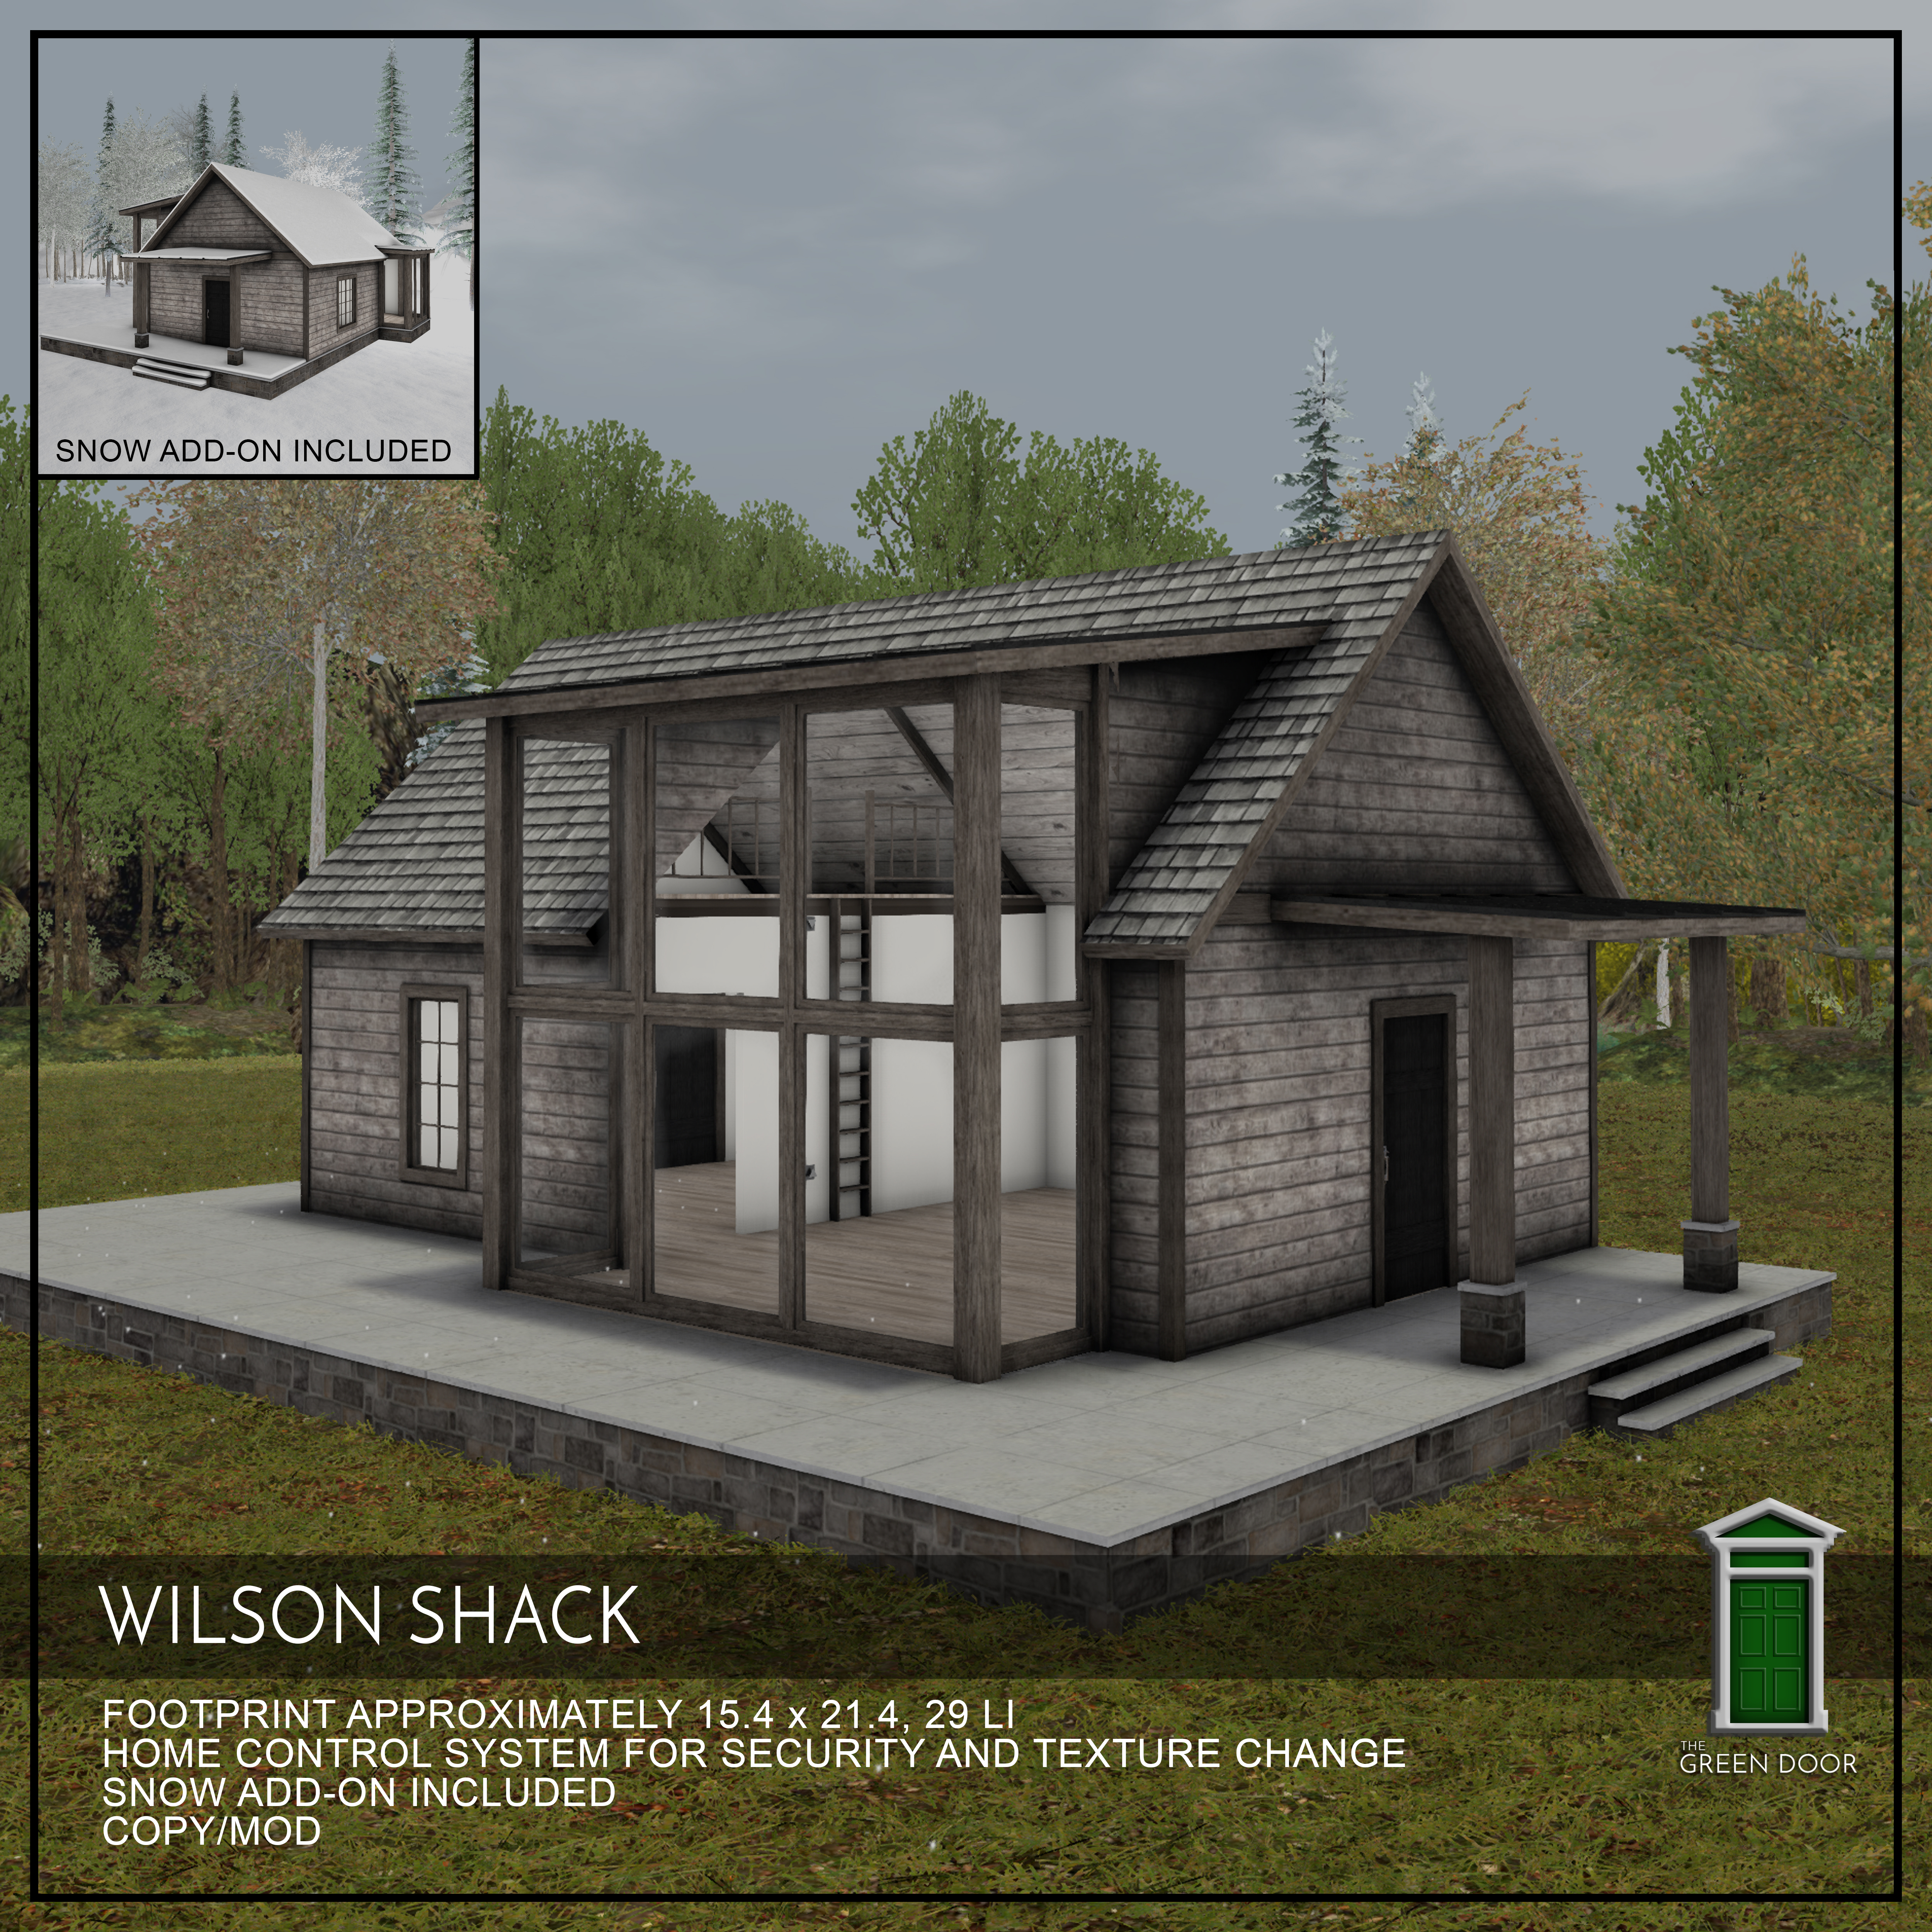 The Green Door – Wilson Shack